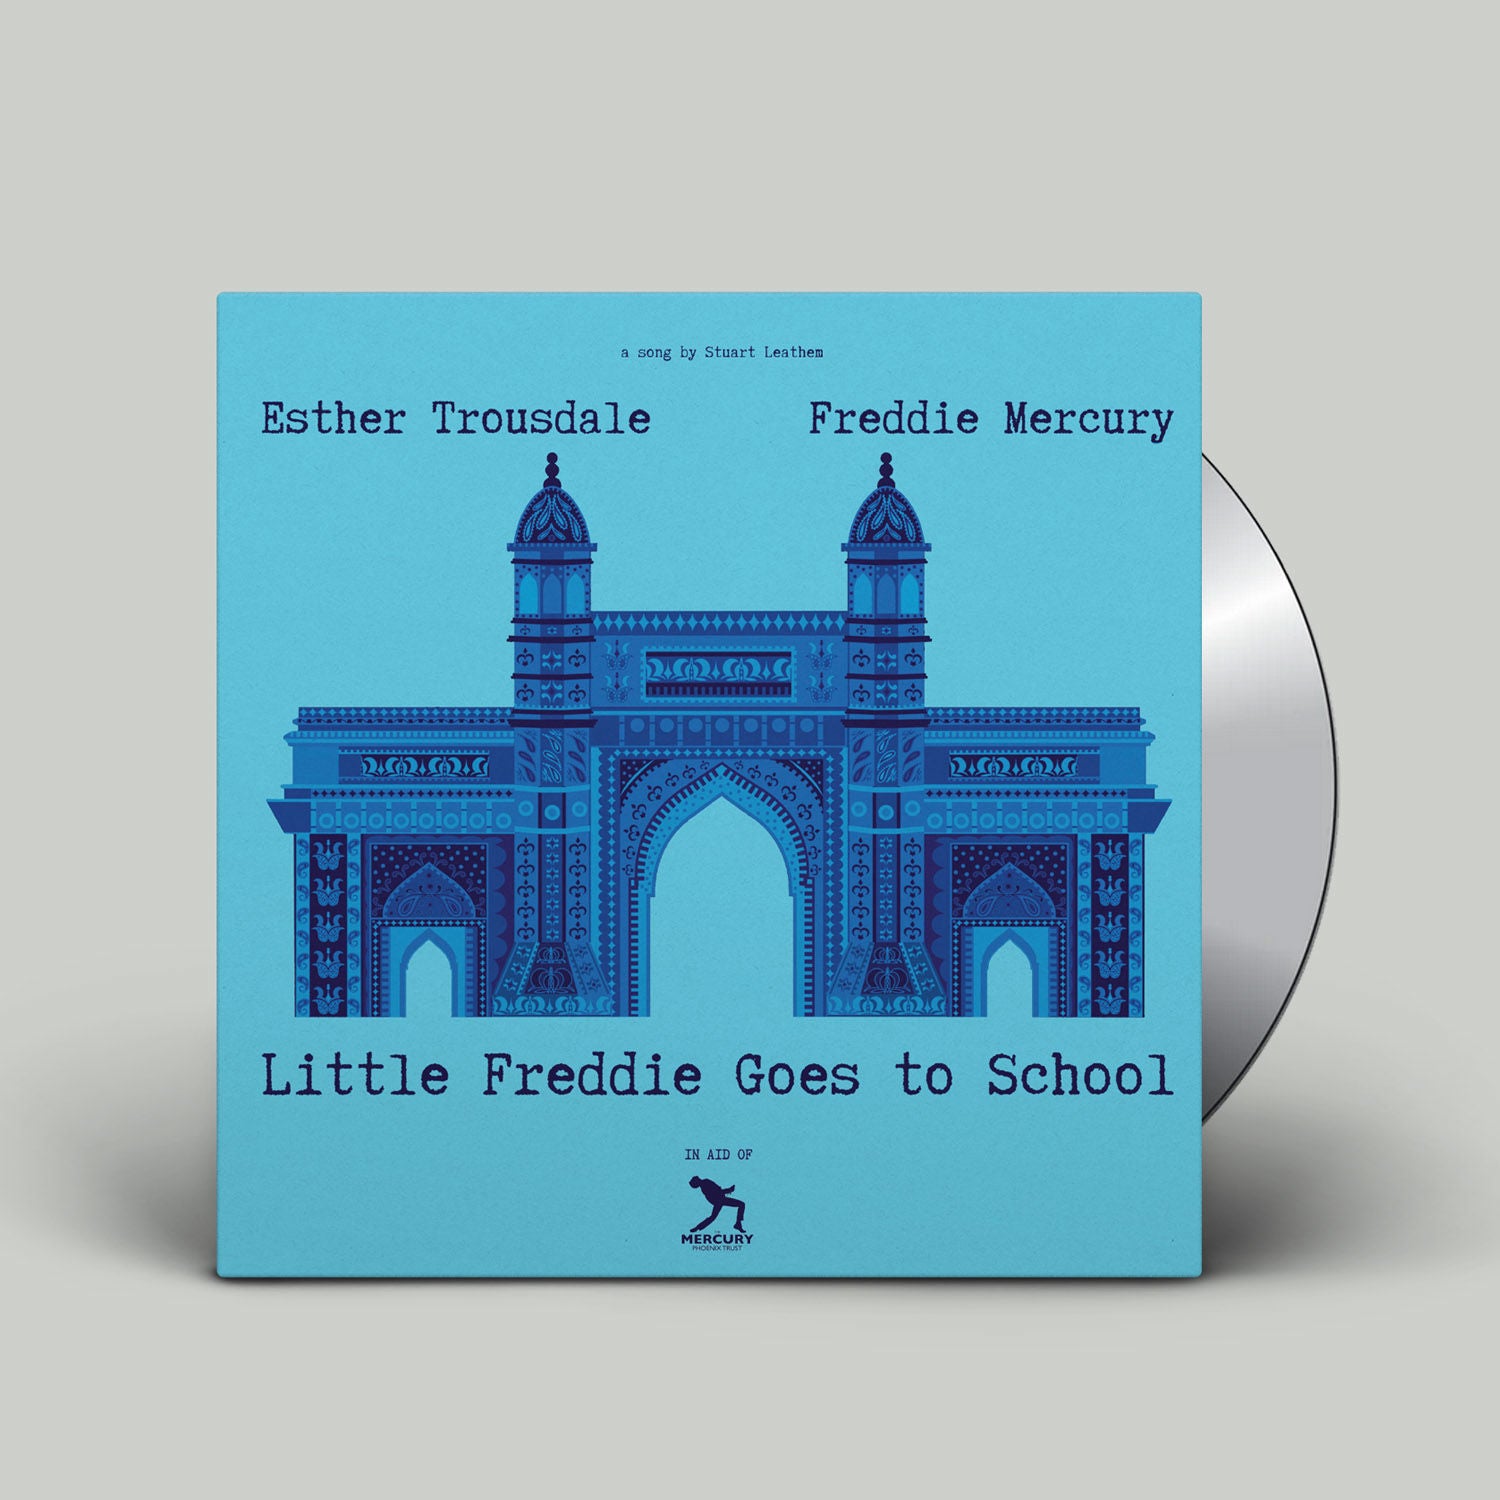 Freddie Mercury & Stuart Leathem (FEAT. Esther Trousdale) - Little Freddie Goes To School CD single